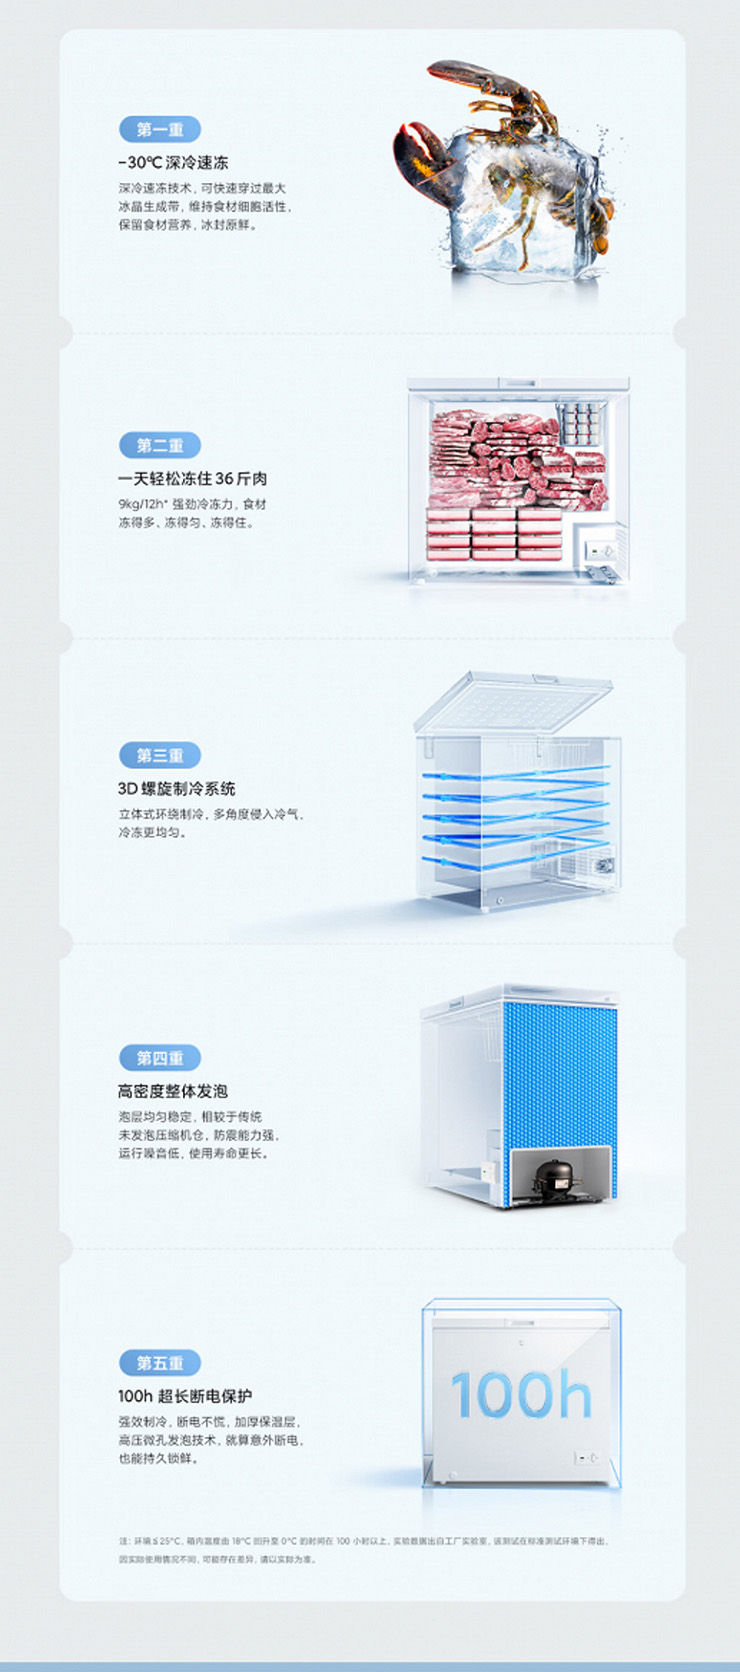 Tủ đông giá rẻ Xiaomi duy trì làm mát suốt 100 giờ không cần điện - 3